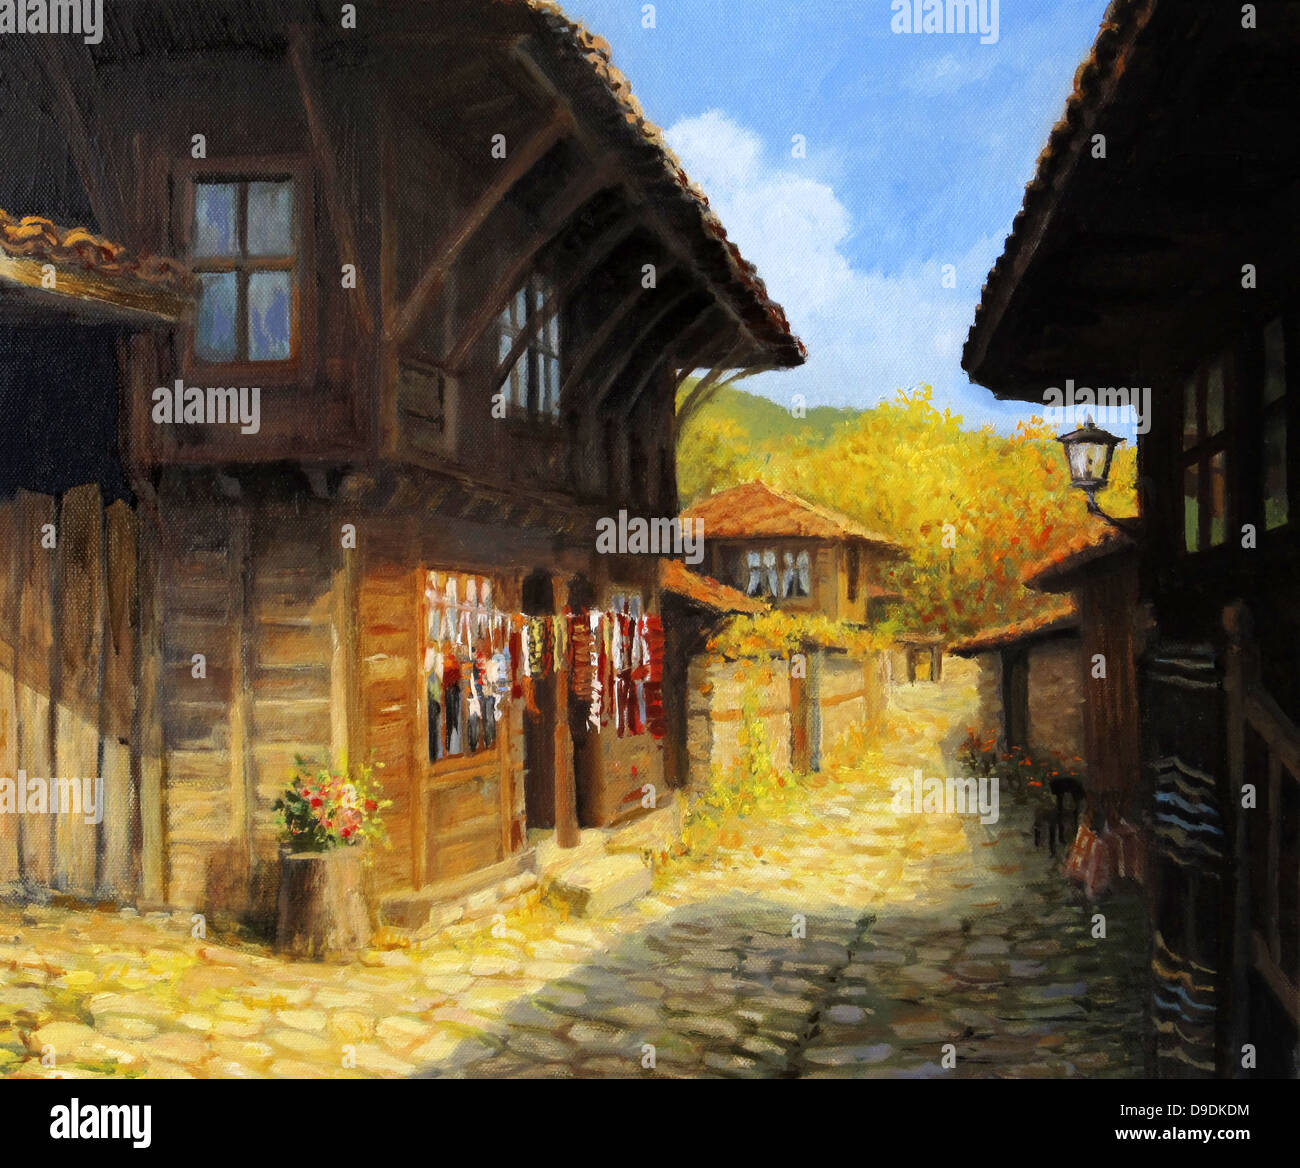 Un dipinto ad olio su tela di una strada stretta con le tipiche vecchie case di villaggio Zheravna, Bulgaria. Paesaggio rurale. Foto Stock